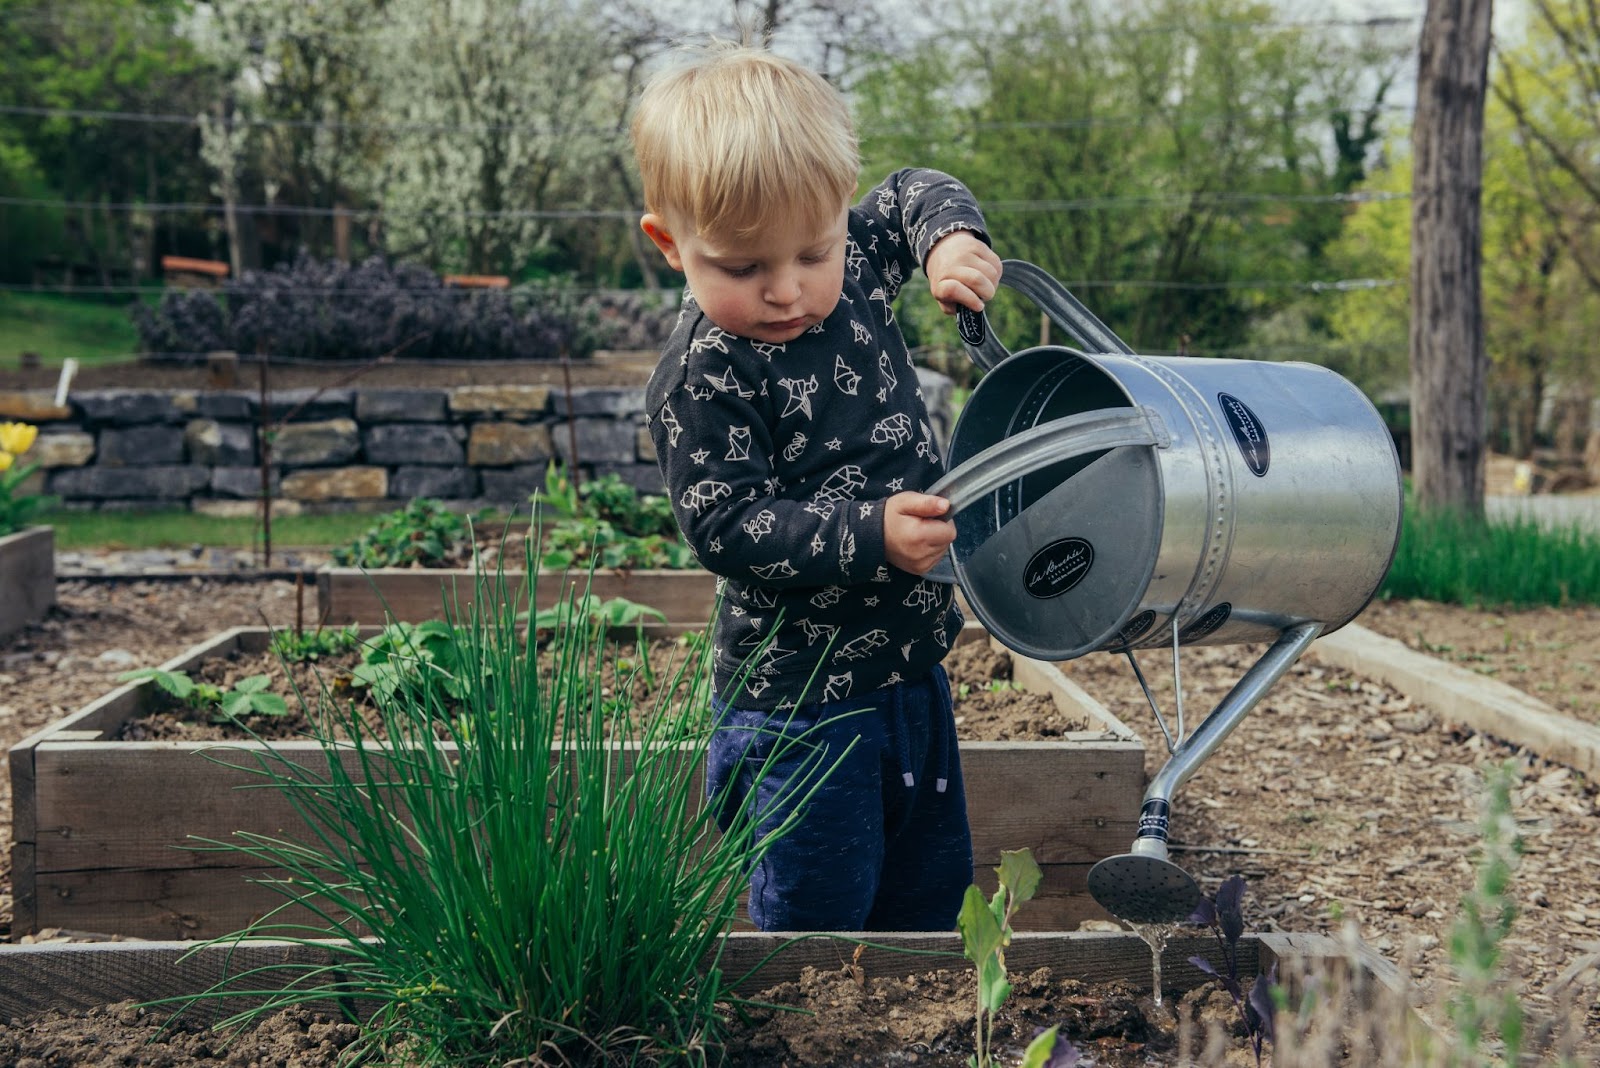 Baby watering his garden